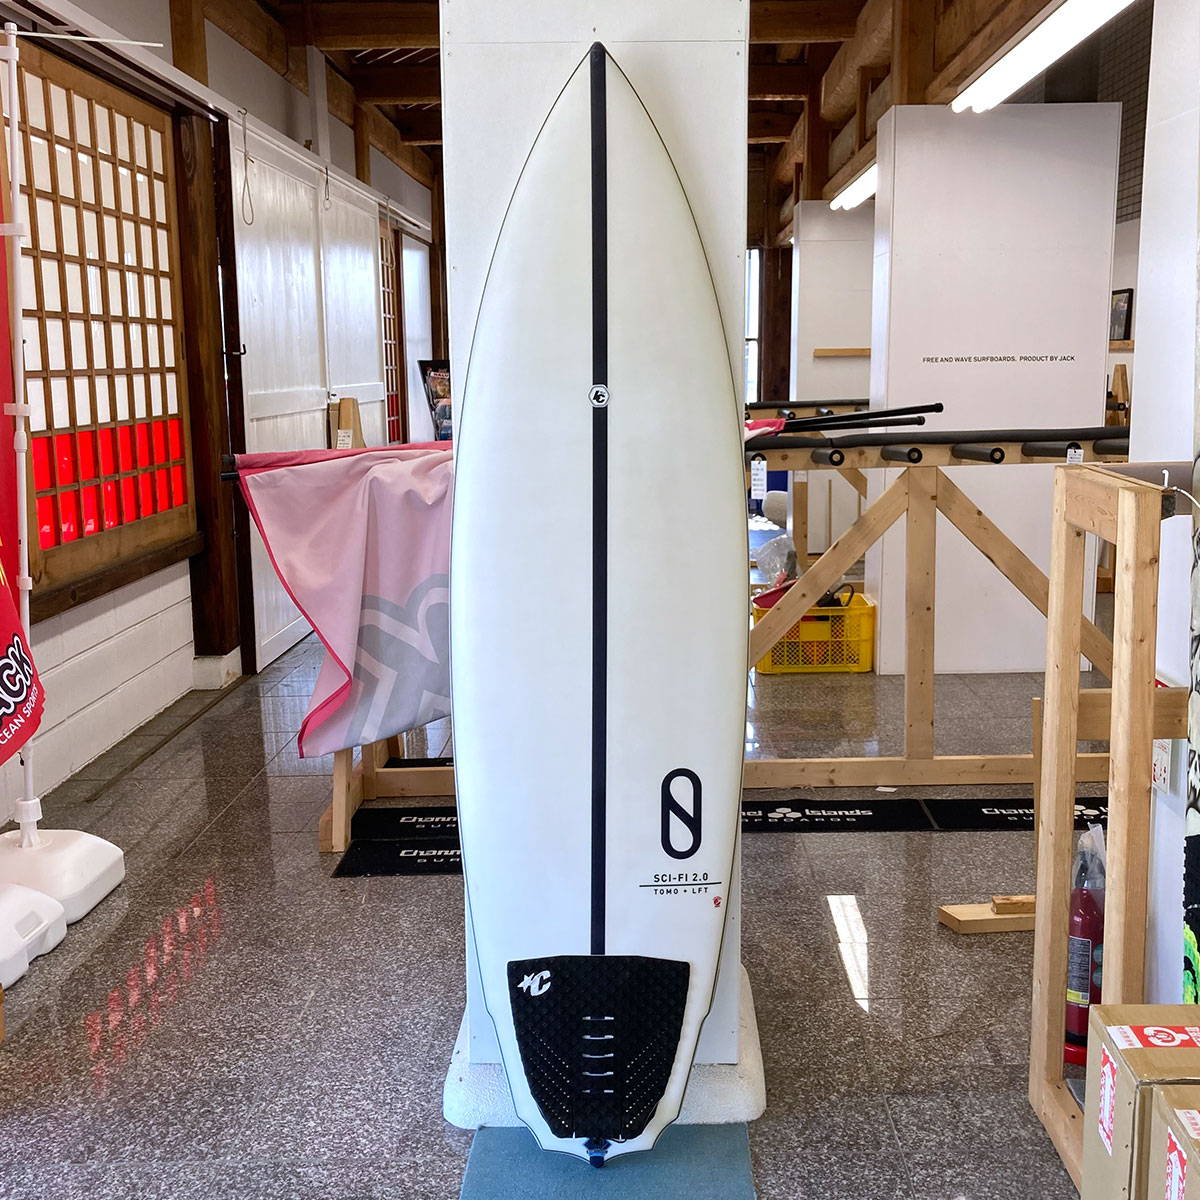 中古ボード サーフボード サーフィン USED SURFBOAR【used280】FIREWIRE Surfboards Sci-Fi 2.0  ファイヤーワイヤー サーフボード サイファイ 6'3 x 20' 7/8 x 2' 7/8 【40.8L】-ジャックオーシャンスポーツ